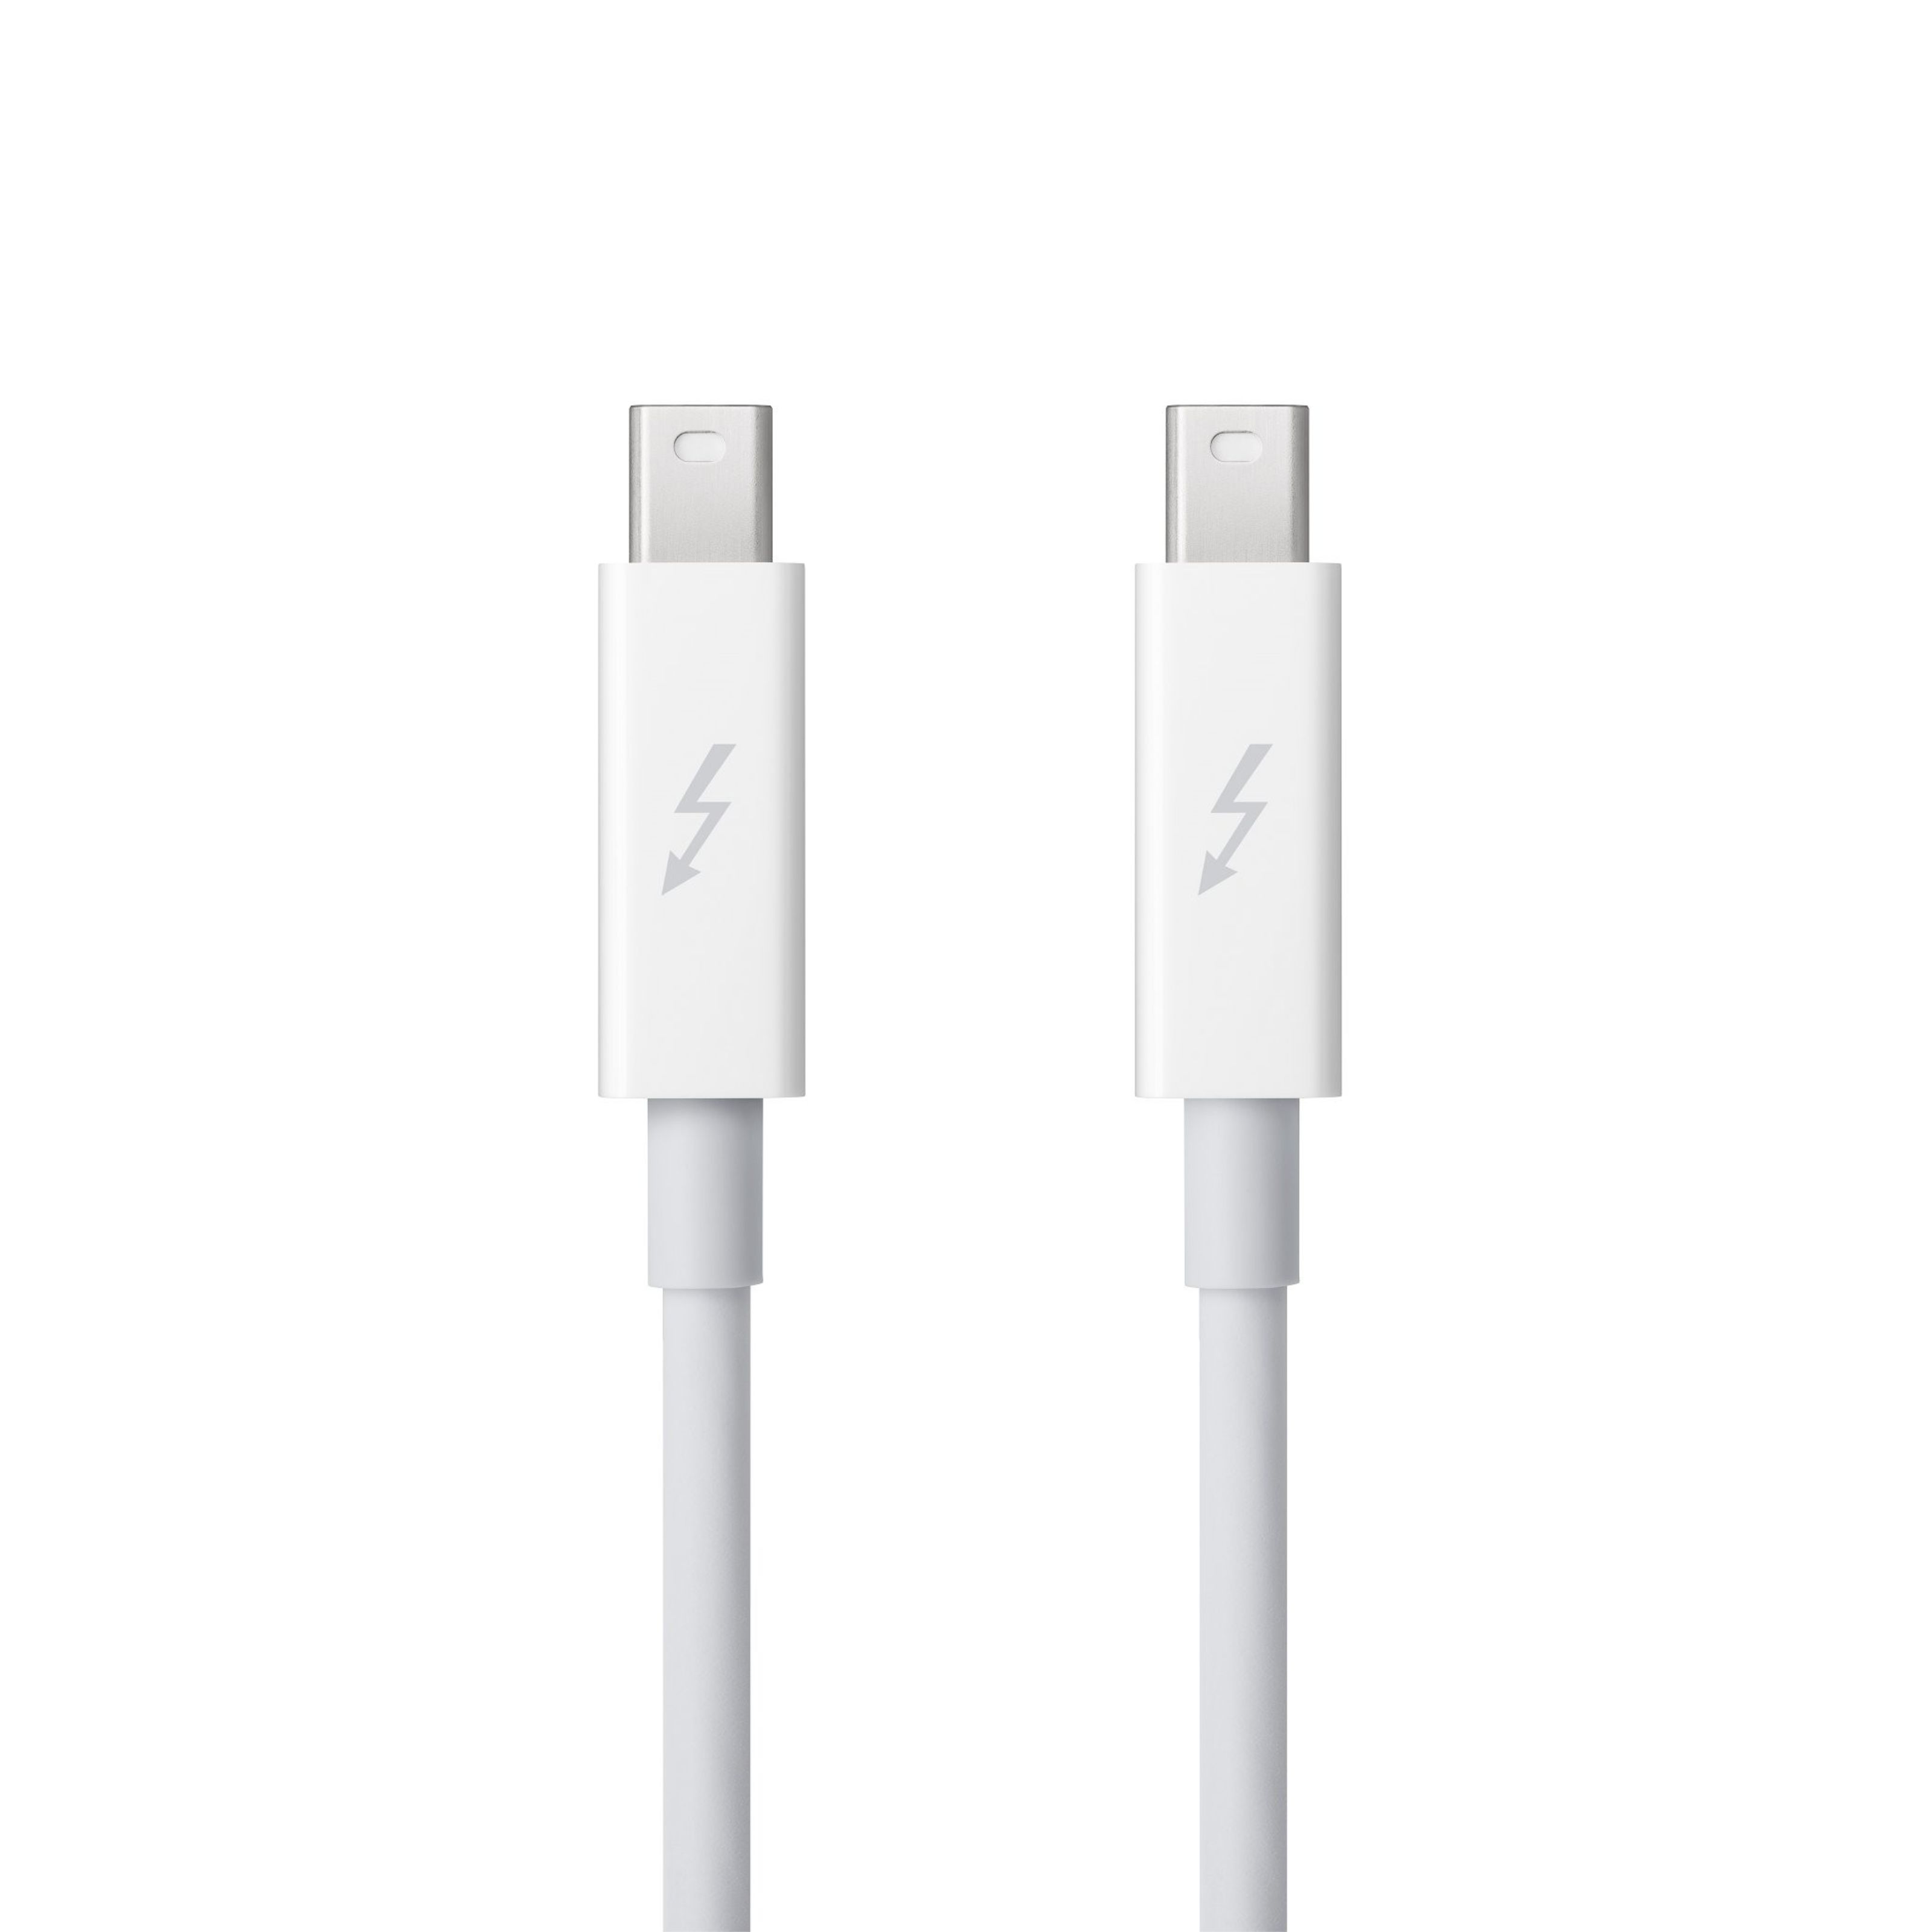 Apple - Thunderbolt Kabel 2m weiß